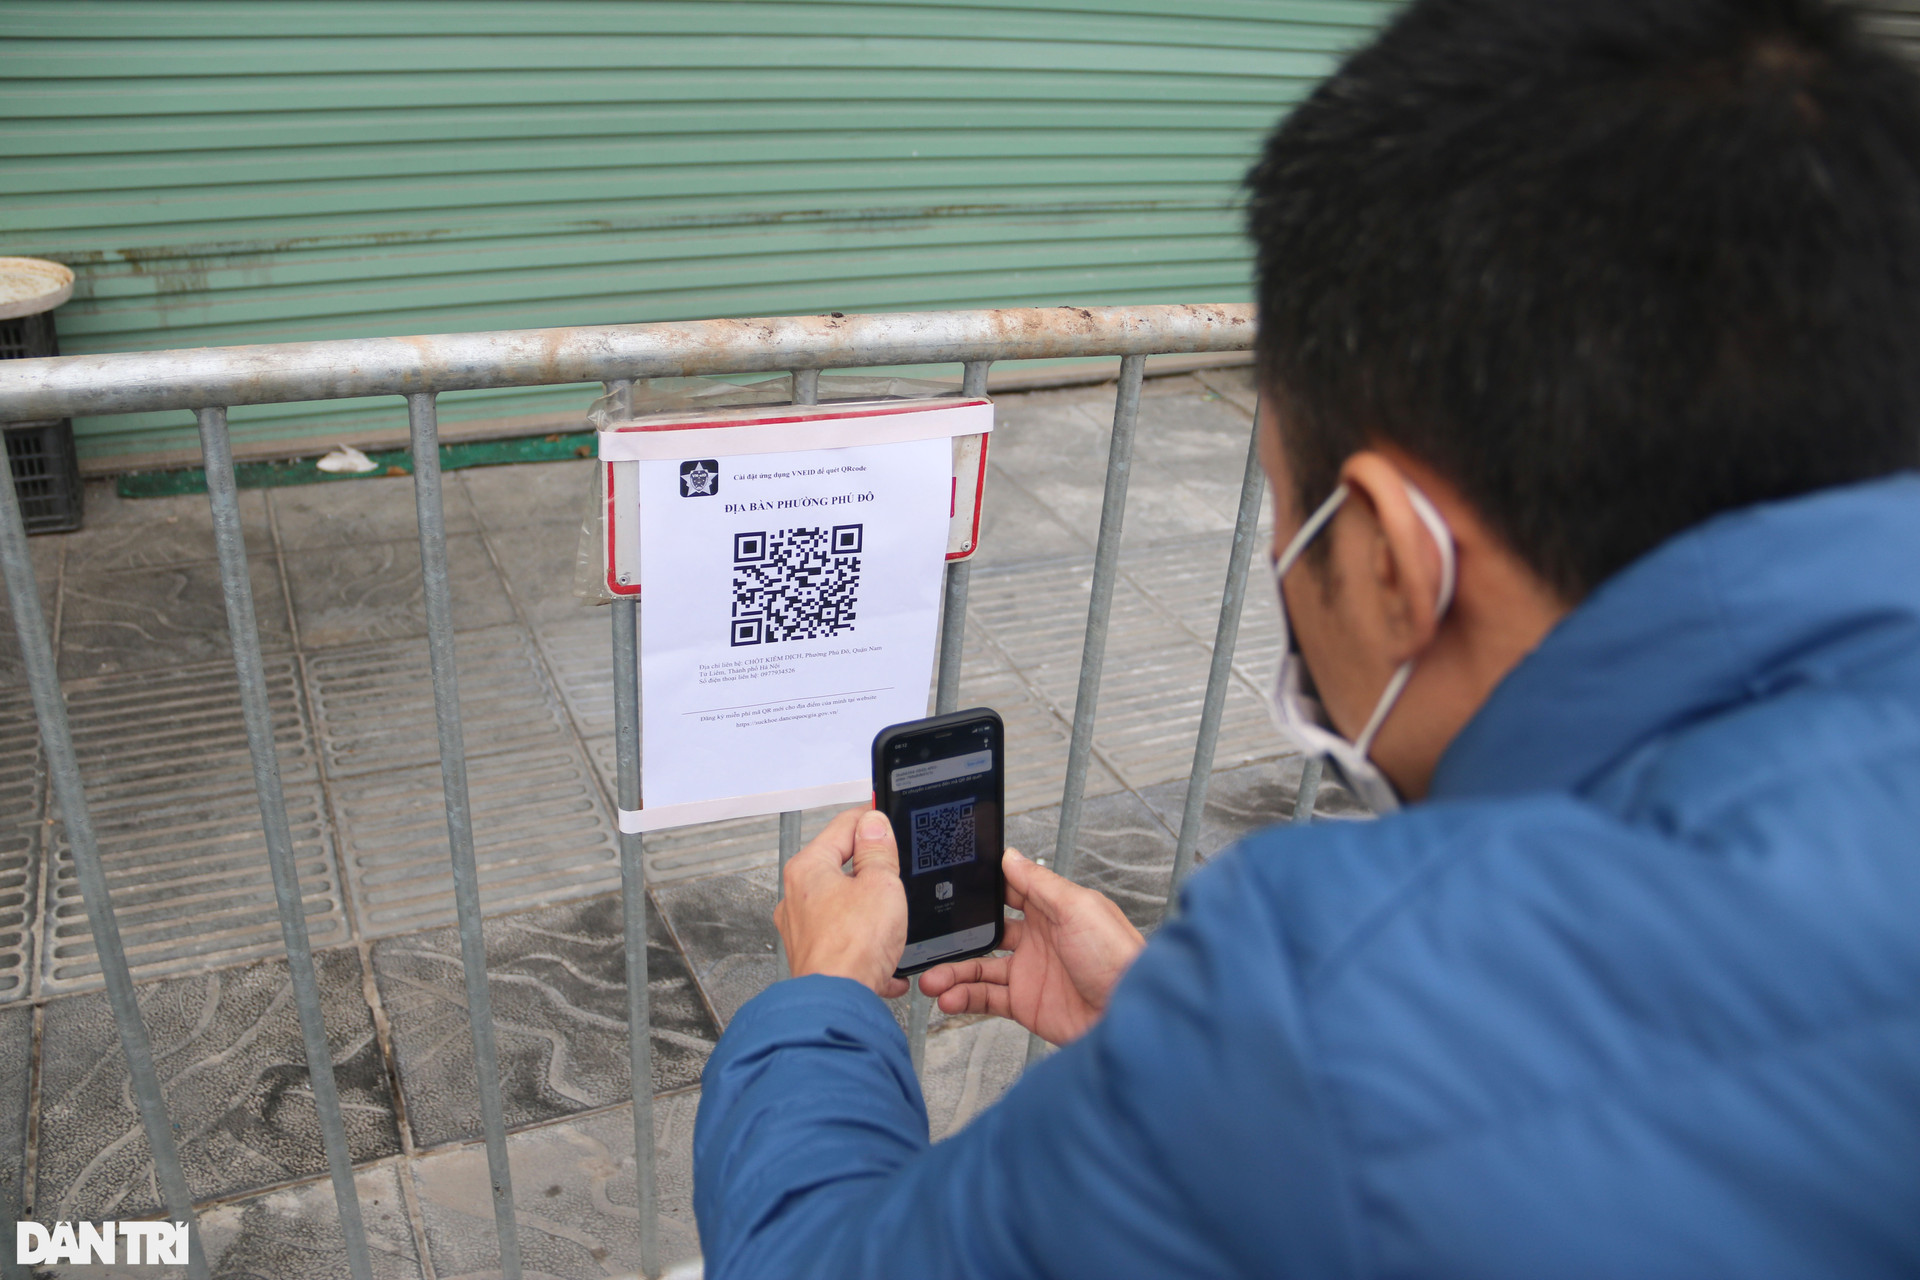 Hà Nội: Đông nghịt người quét QR Code tại ổ dịch Phú Đô để ra vào phường - 11